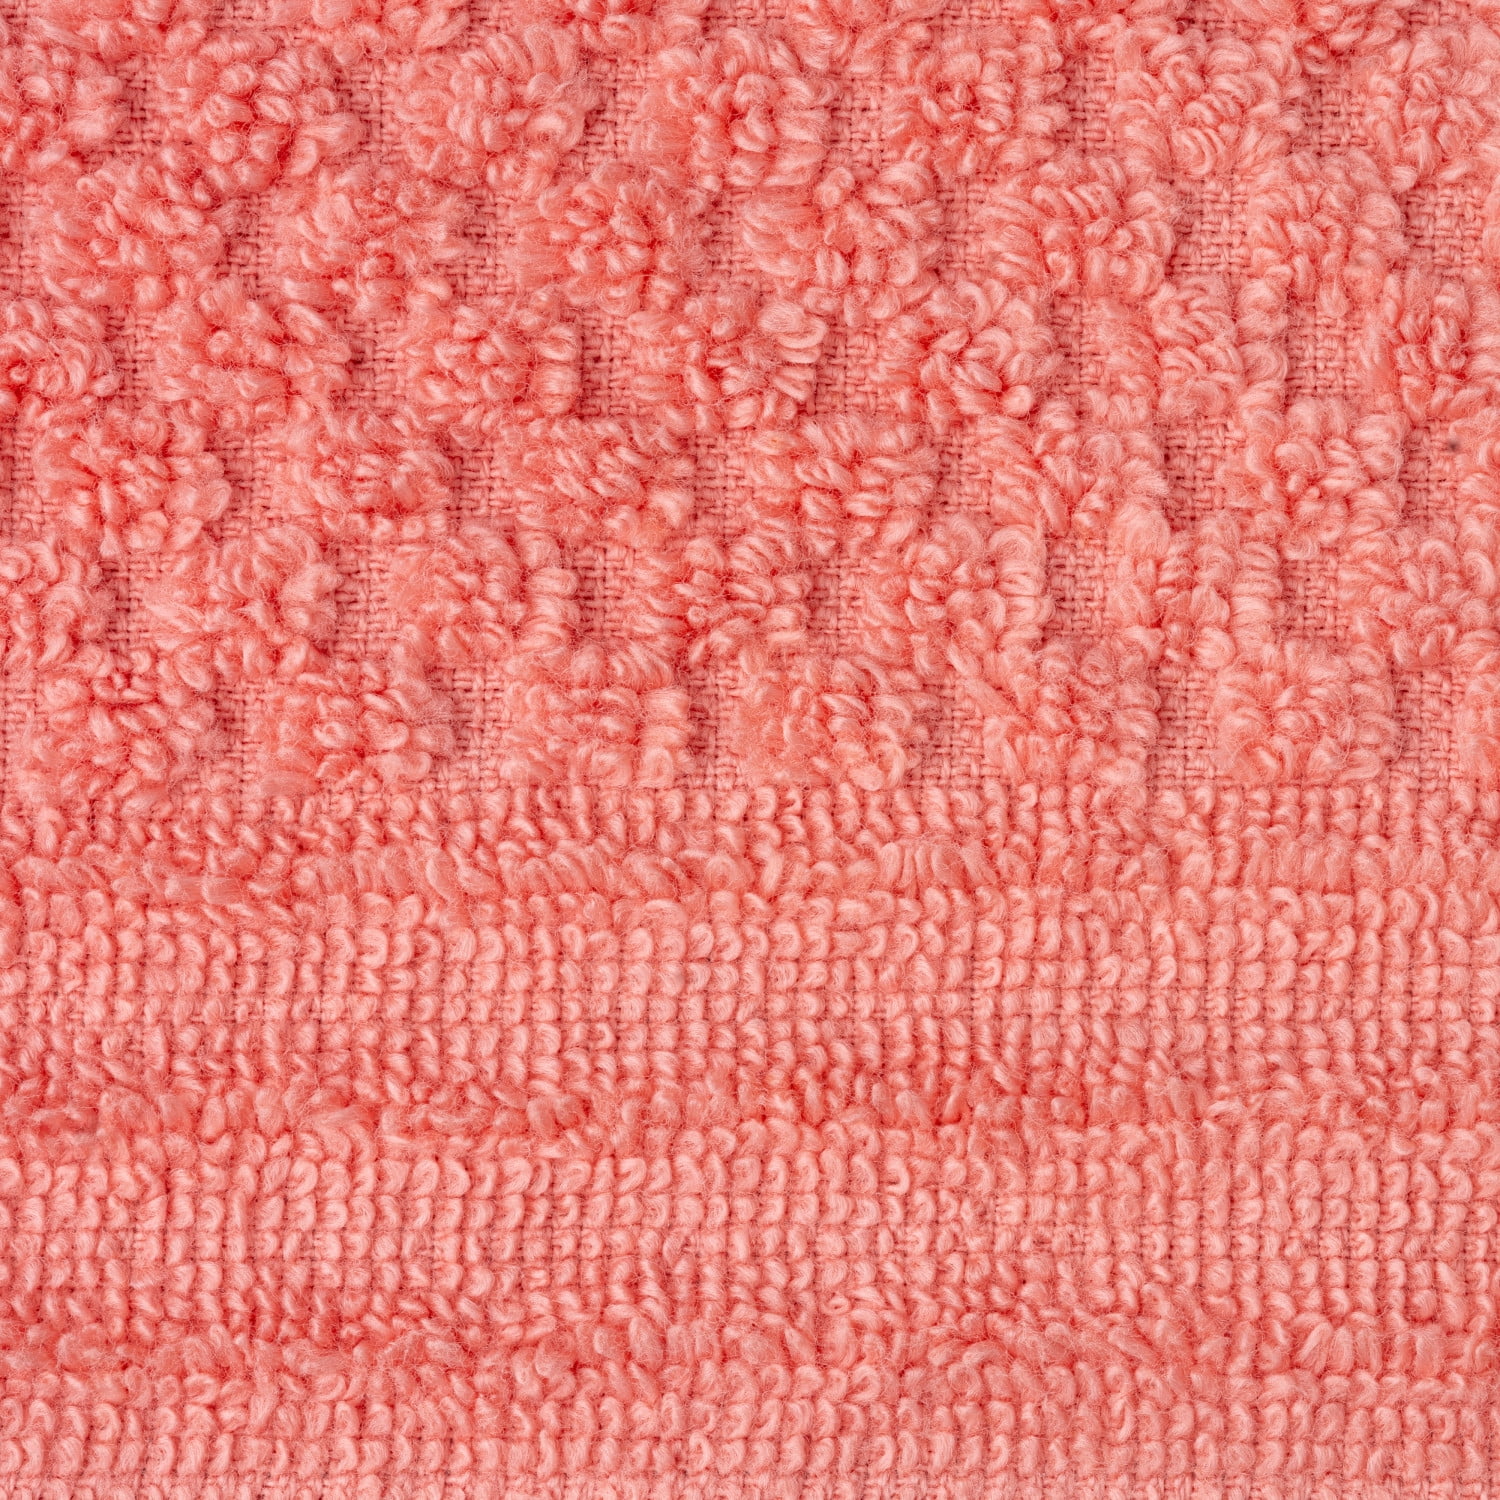 Martha Stewart Everyday Texture Towel 8 Piece Set - White